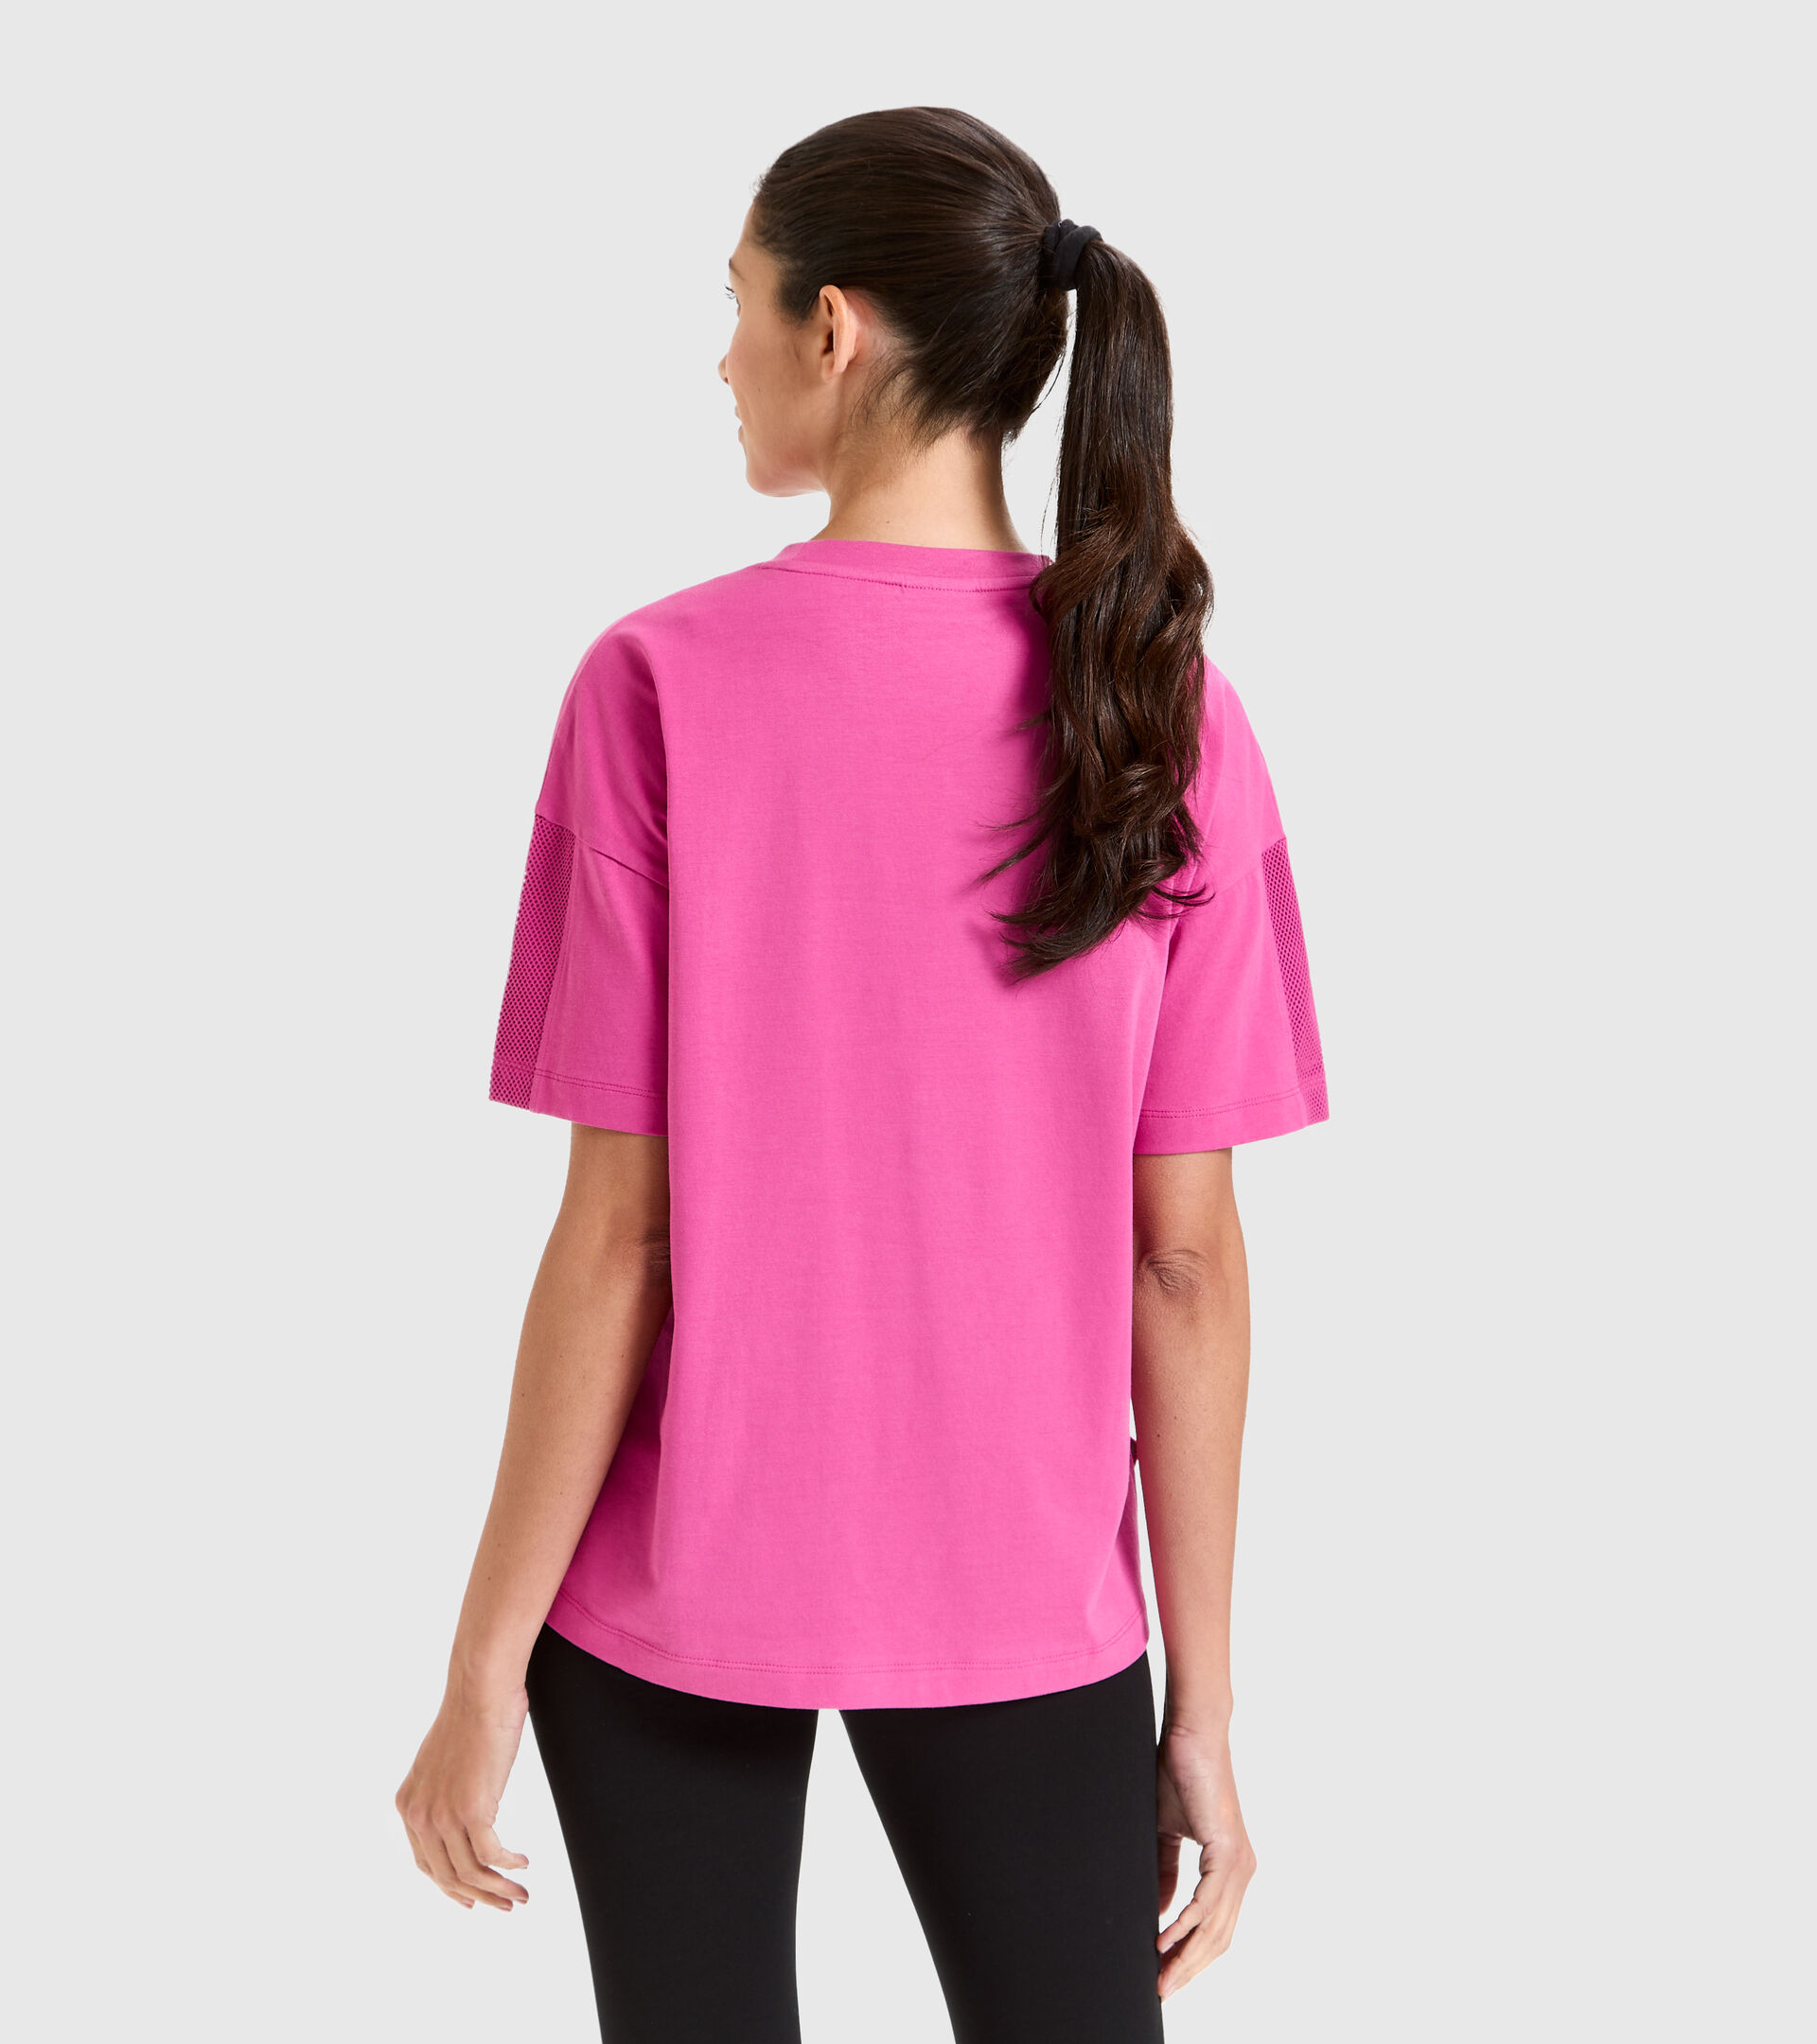 Sportliches Baumwoll-T-Shirt - Damen L.T-SHIRT SS FLOSS ROSA IBIS - Diadora